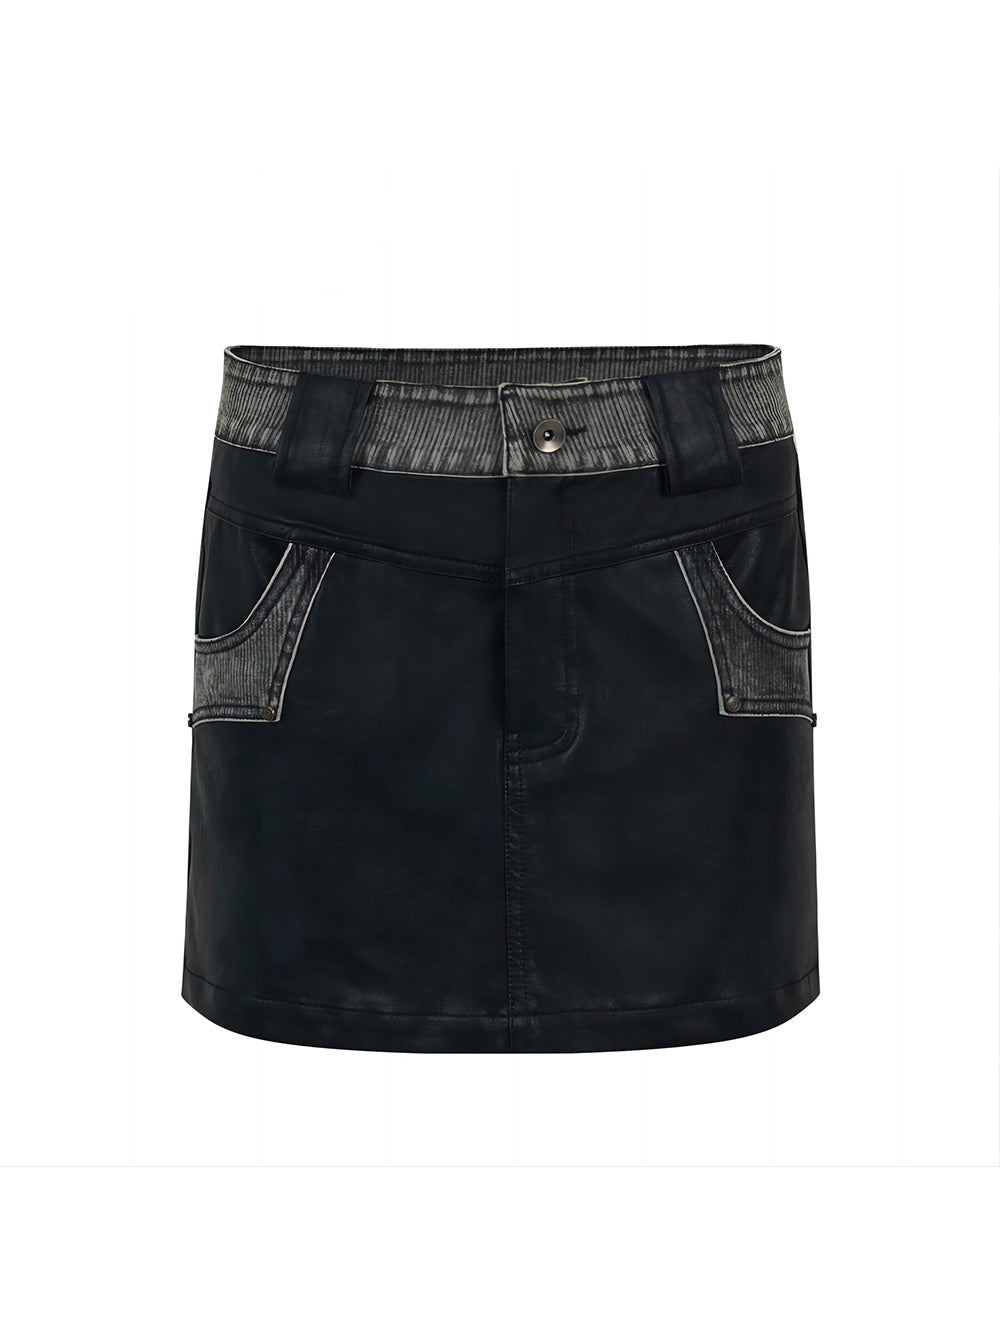 MUKTANK×WESAME Original Design Short Vintage A-Line Leather Skirt